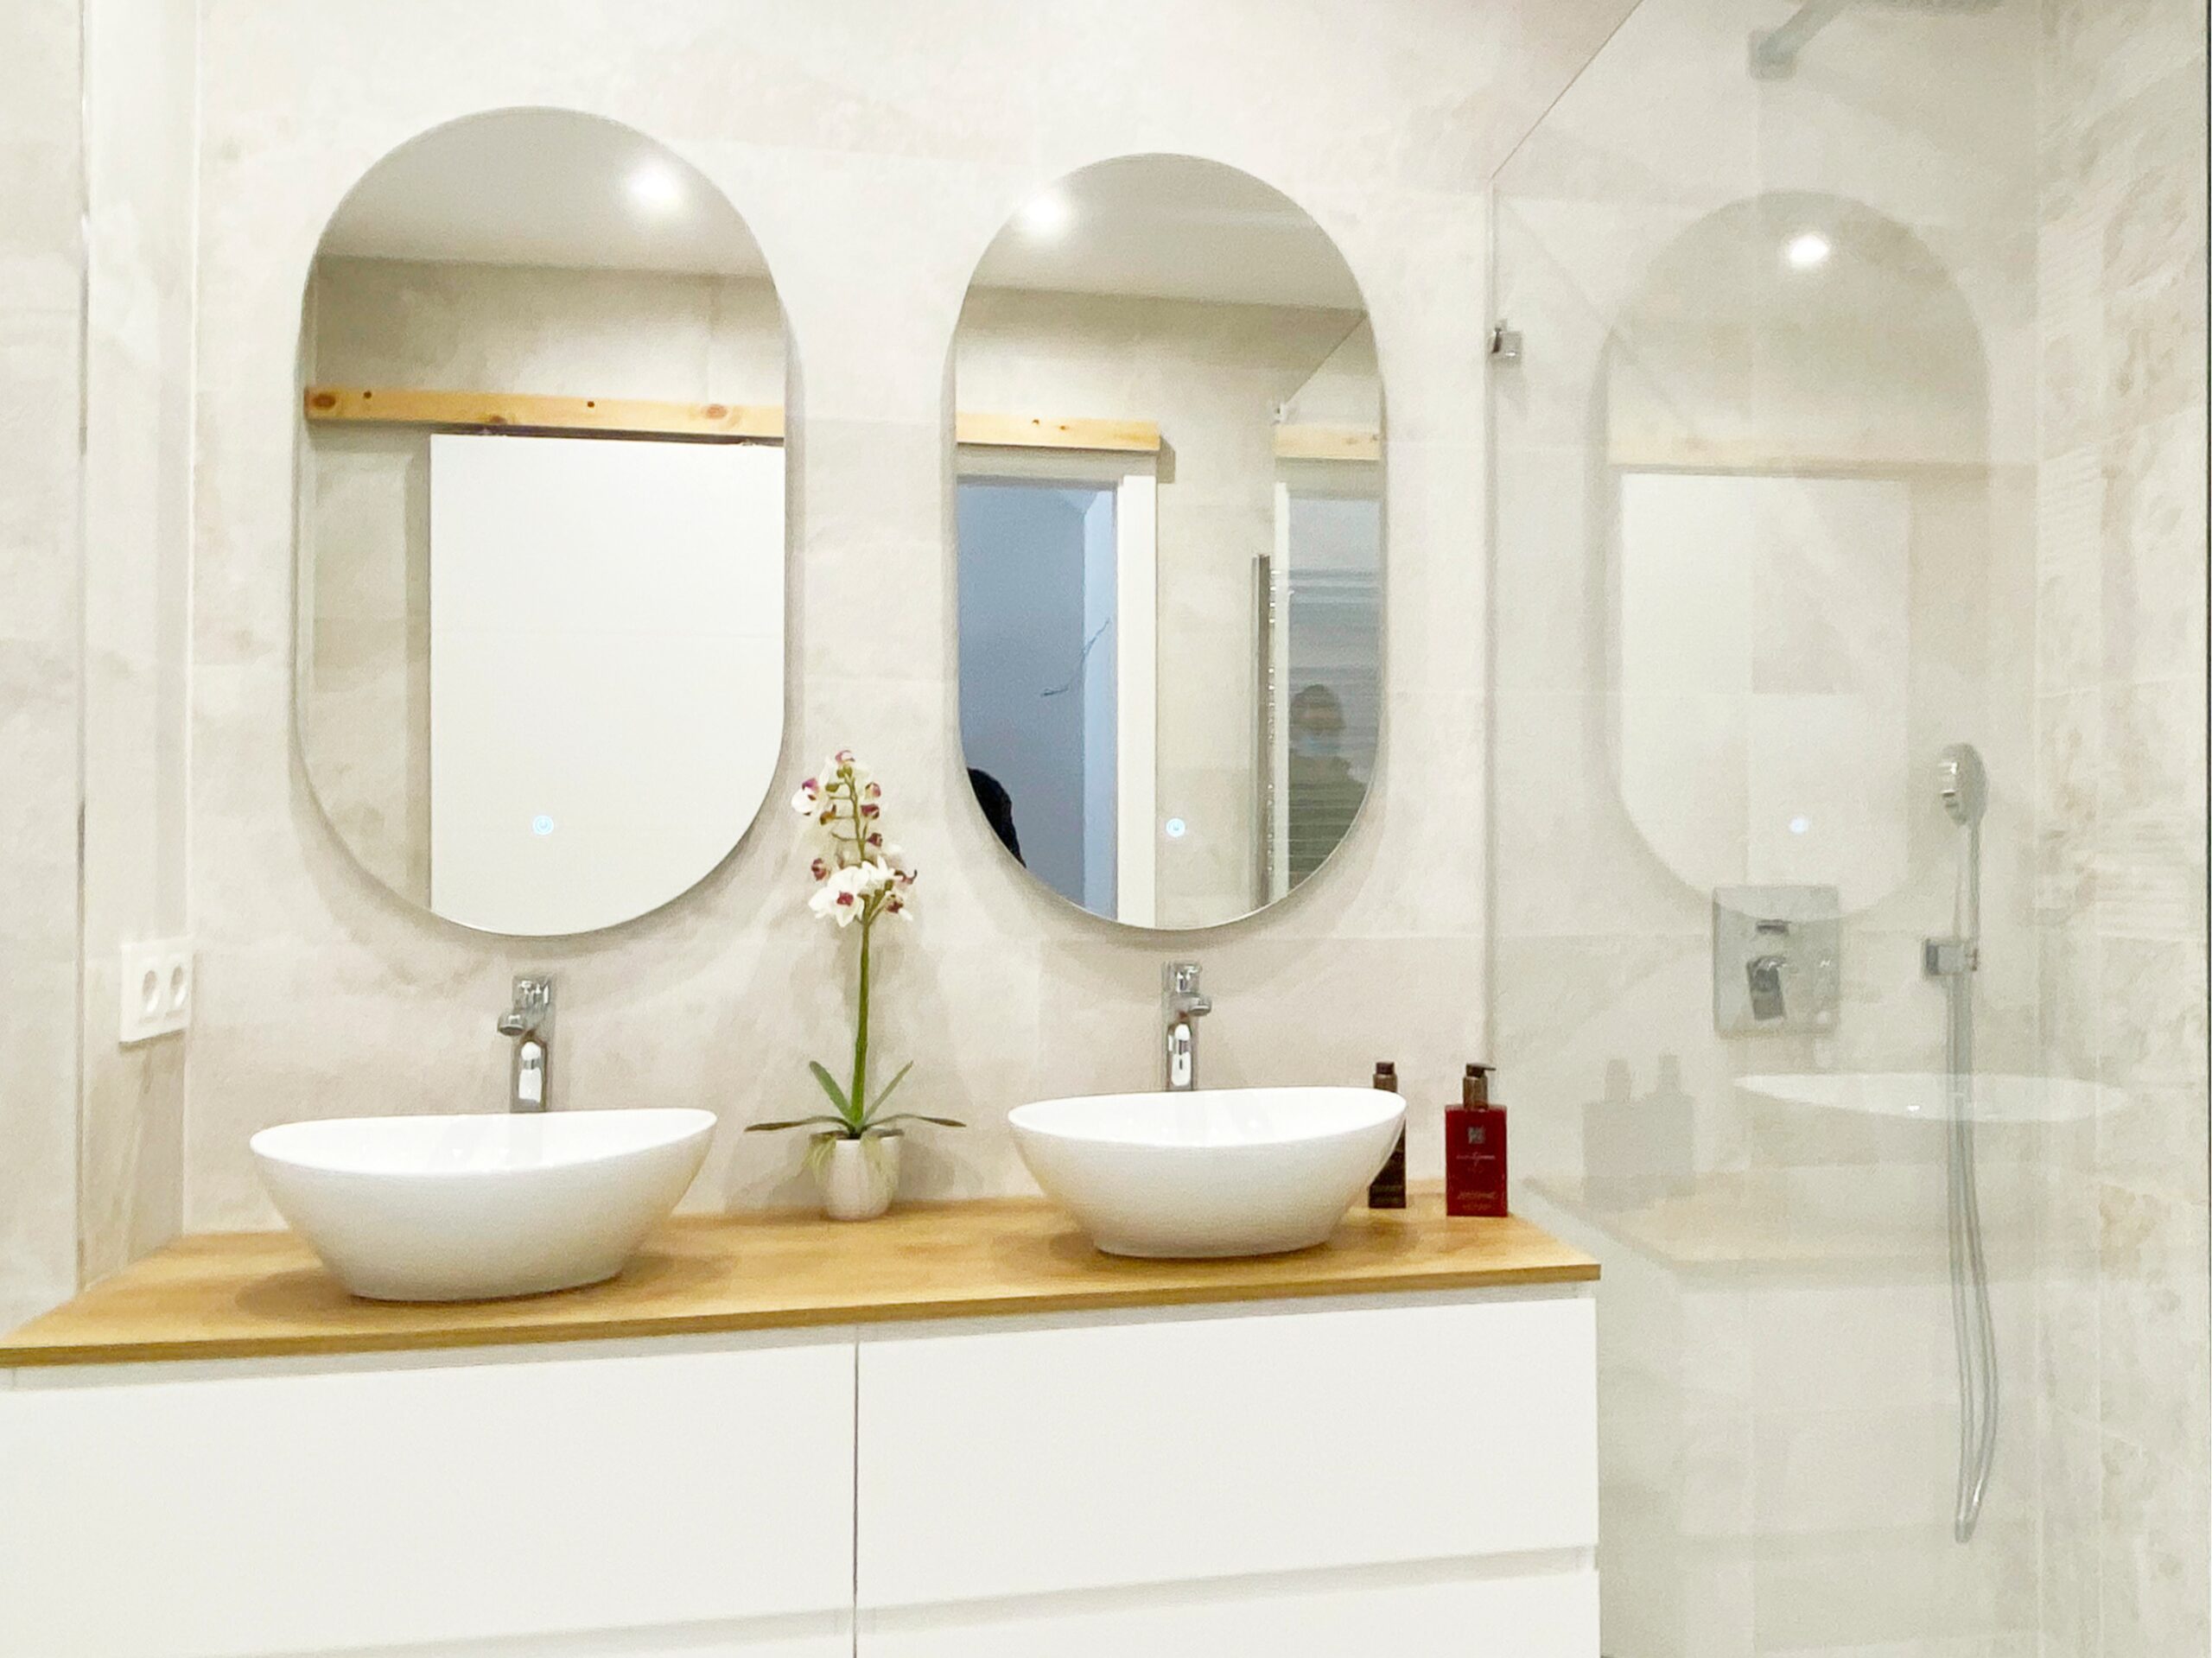 Reforma integral baño moderno suspendido espejos ovalados